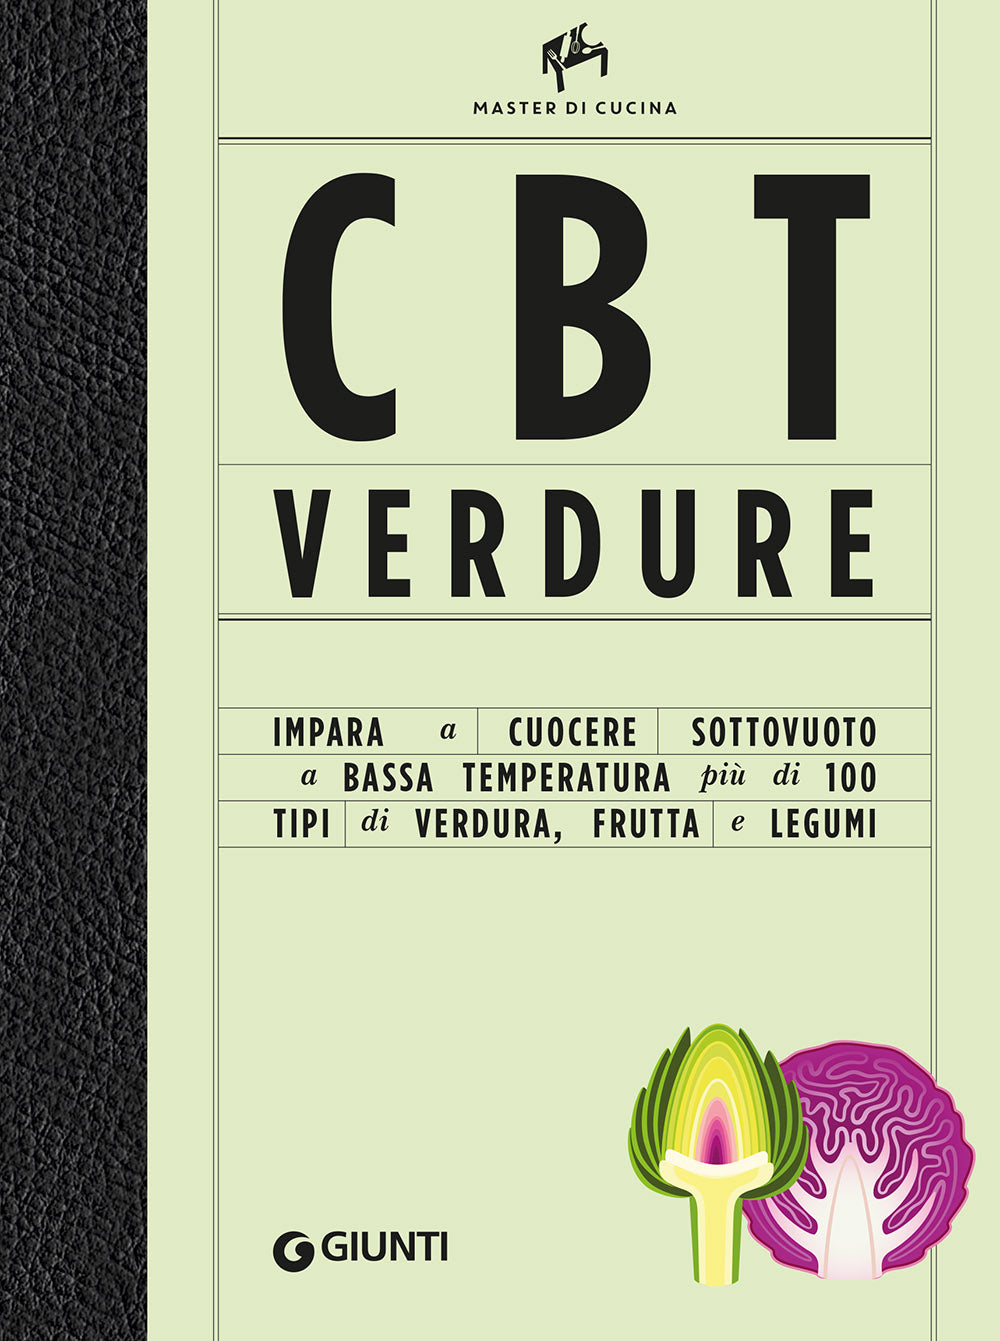 CBT verdure. Cuocere sottovuoto a bassa temperatura. Master di cucina.